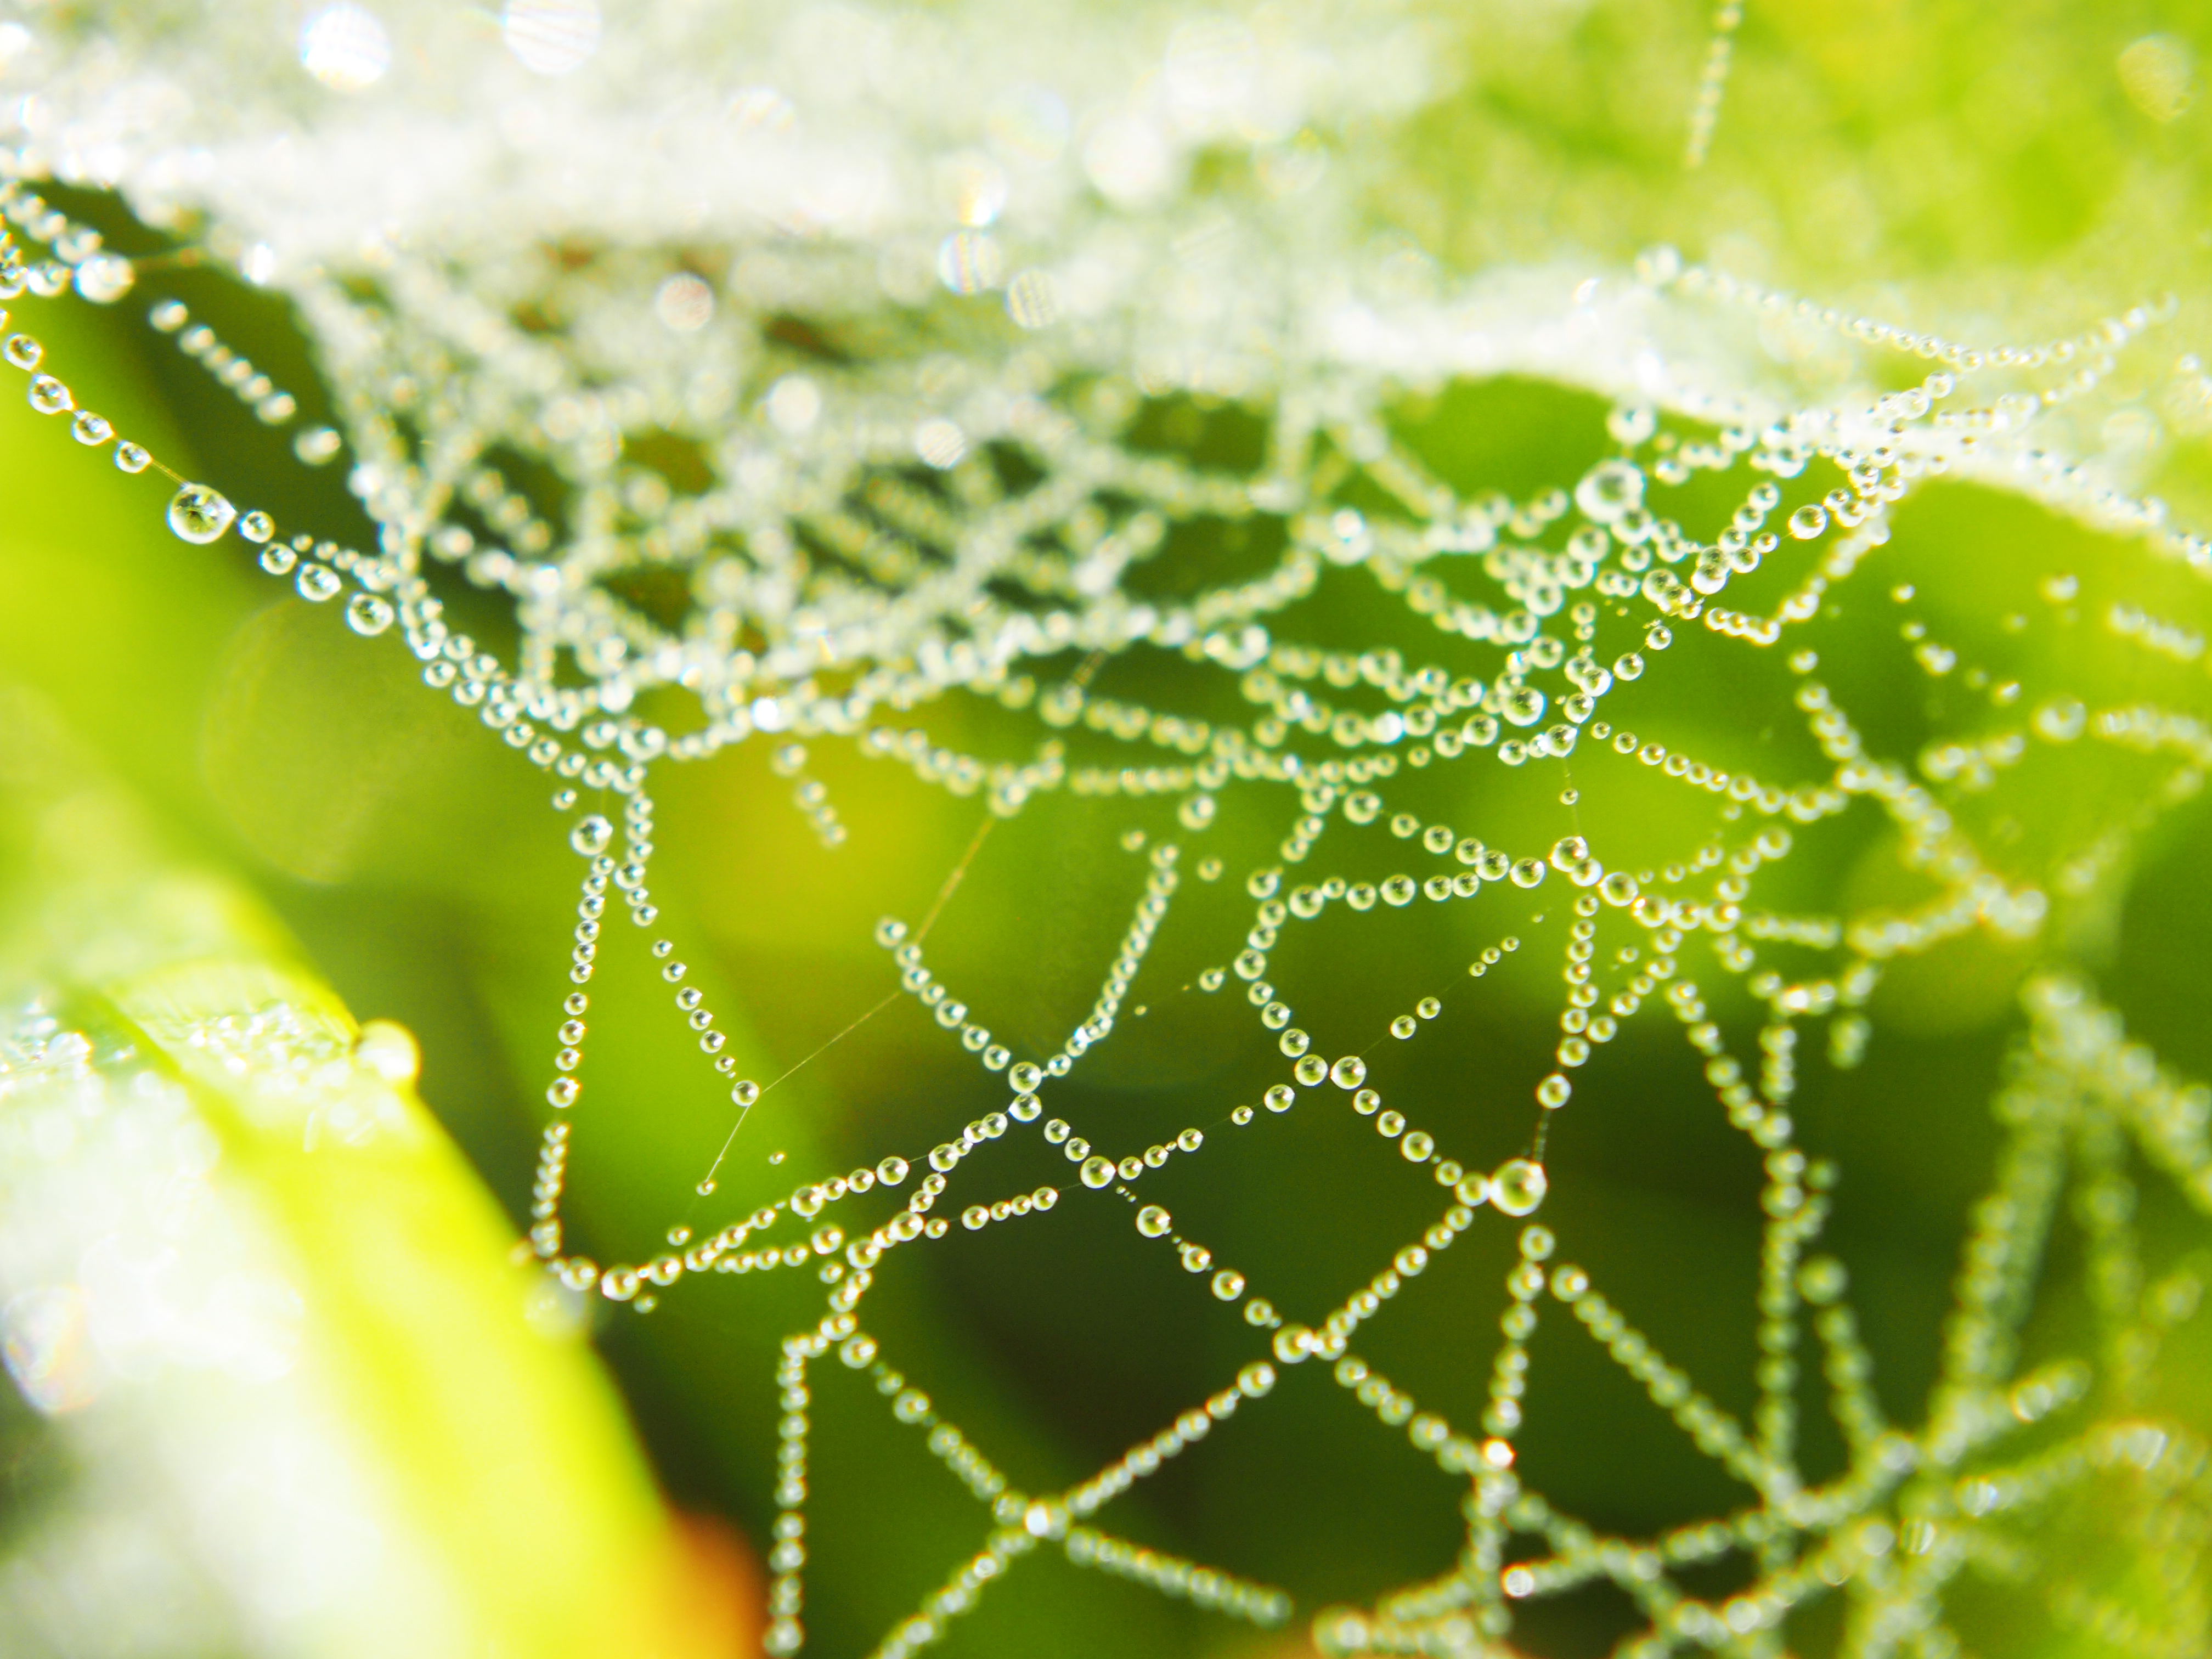 Dew in spider web